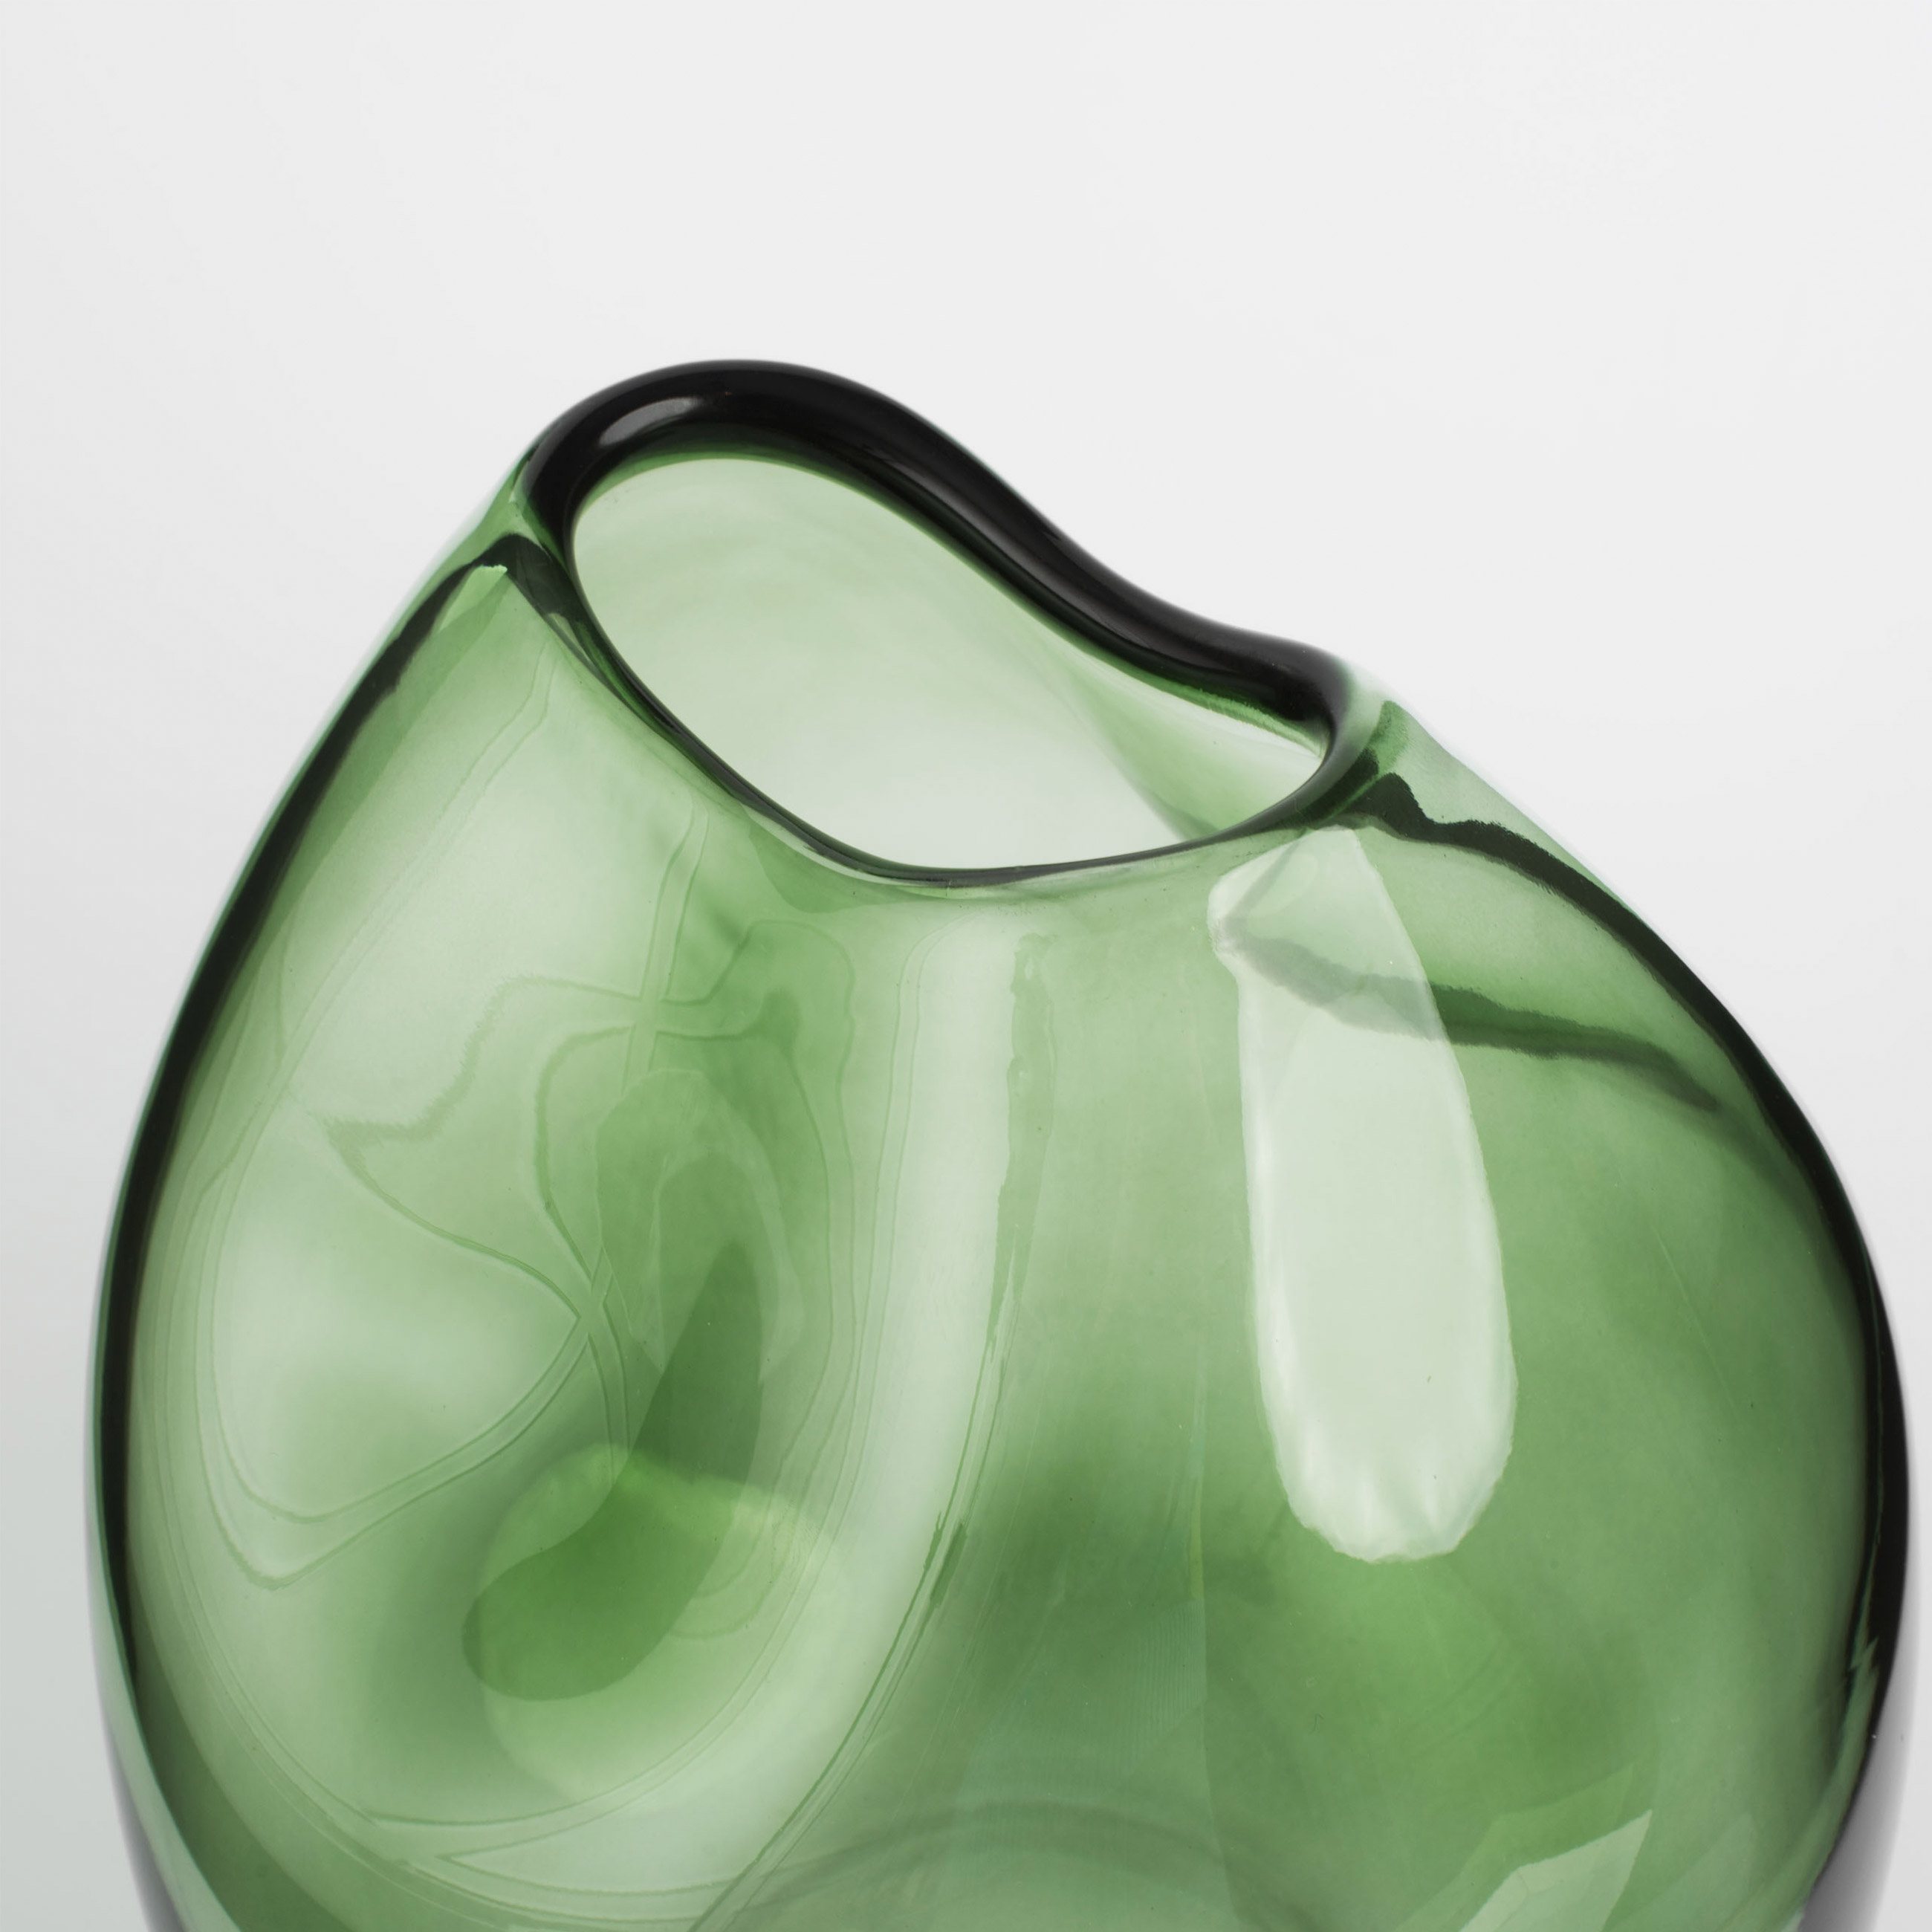 Flower vase, 25 cm, glass, green, Clear color изображение № 3